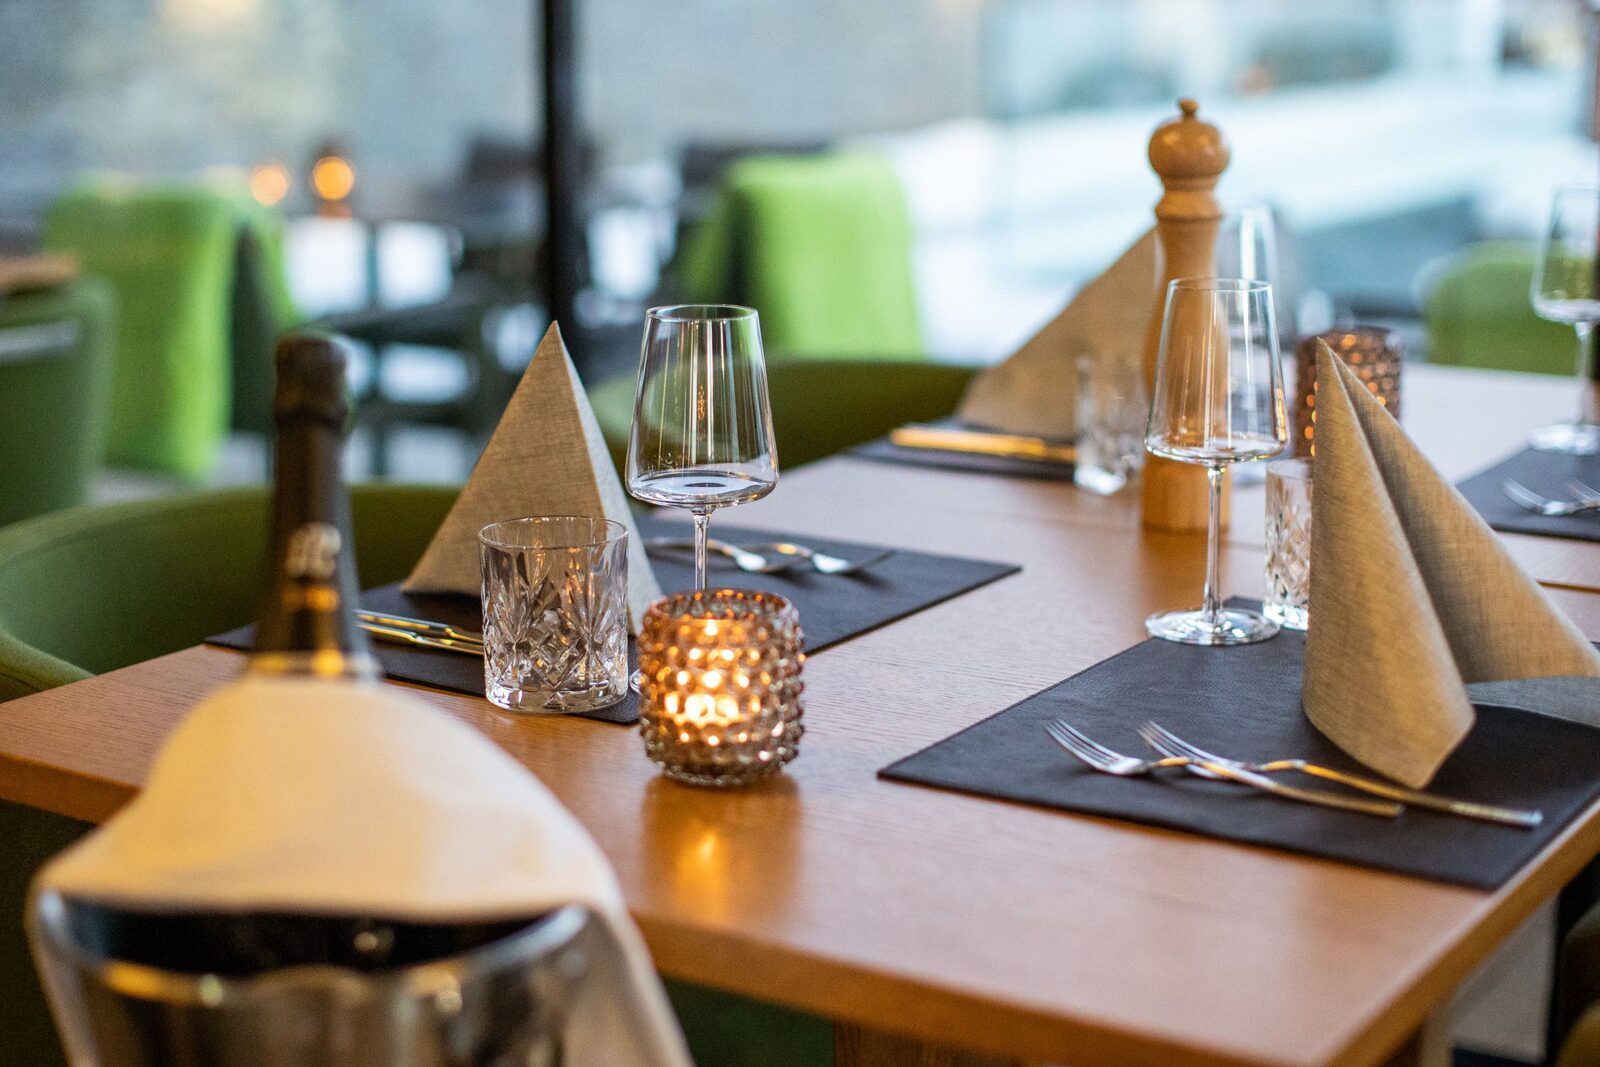 Off Course Alpenbrasserie & Bar wird von Restaurant Guru zur besten Cafeteria 2023 gekürt